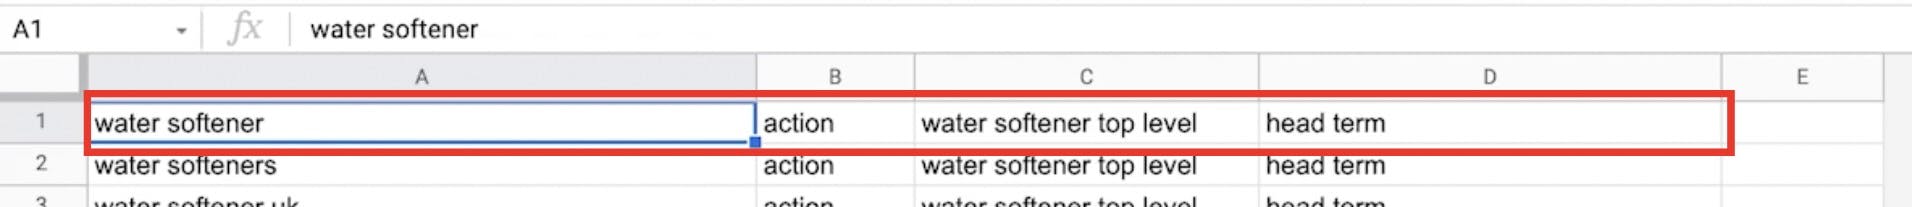 Example Google Sheet
Column A: Water softener
Column B: Action
Column C: Water softener top level
Column D: Head term